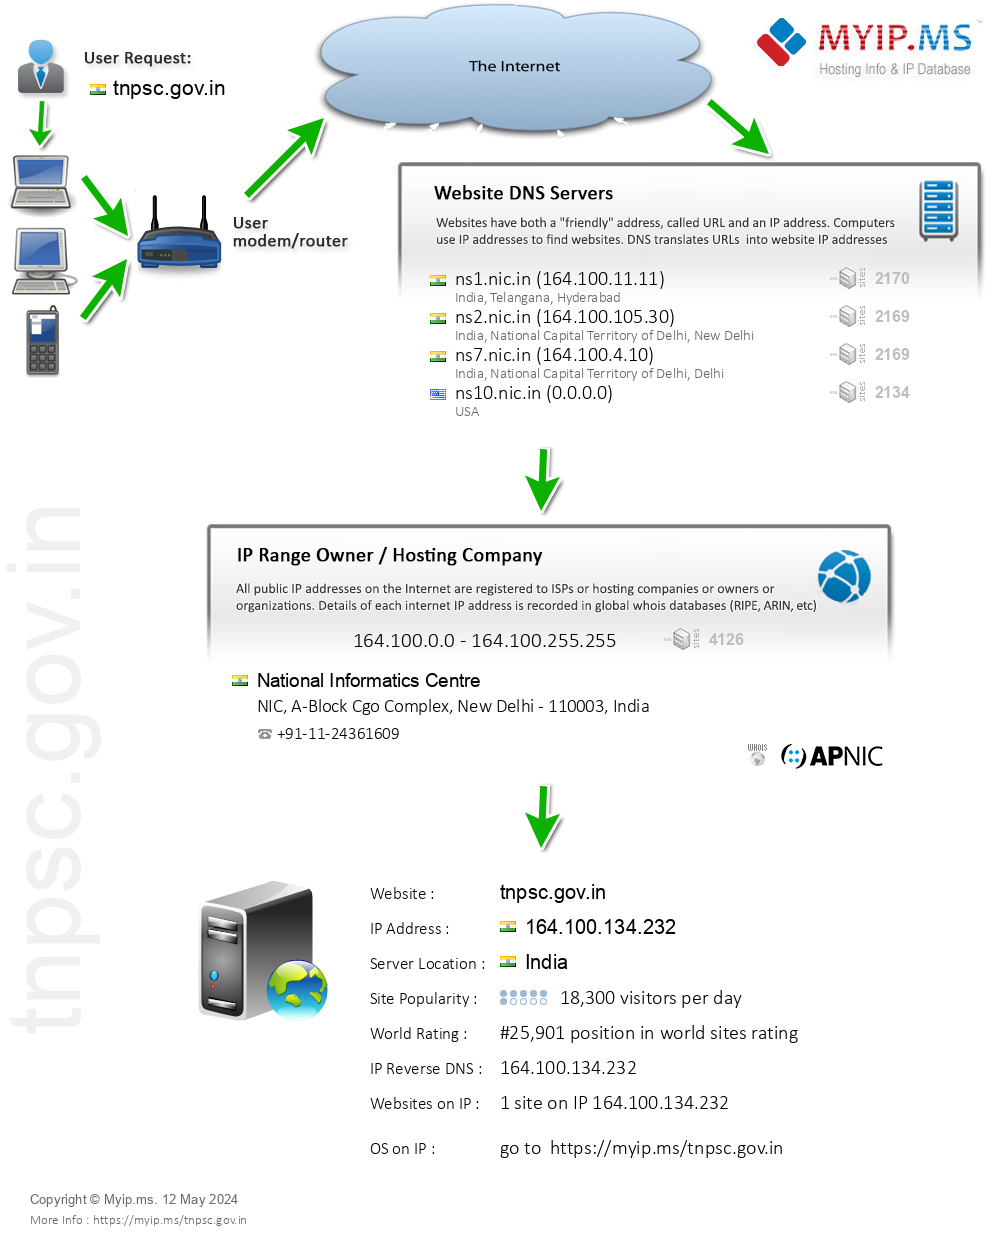 Tnpsc.gov.in - Website Hosting Visual IP Diagram